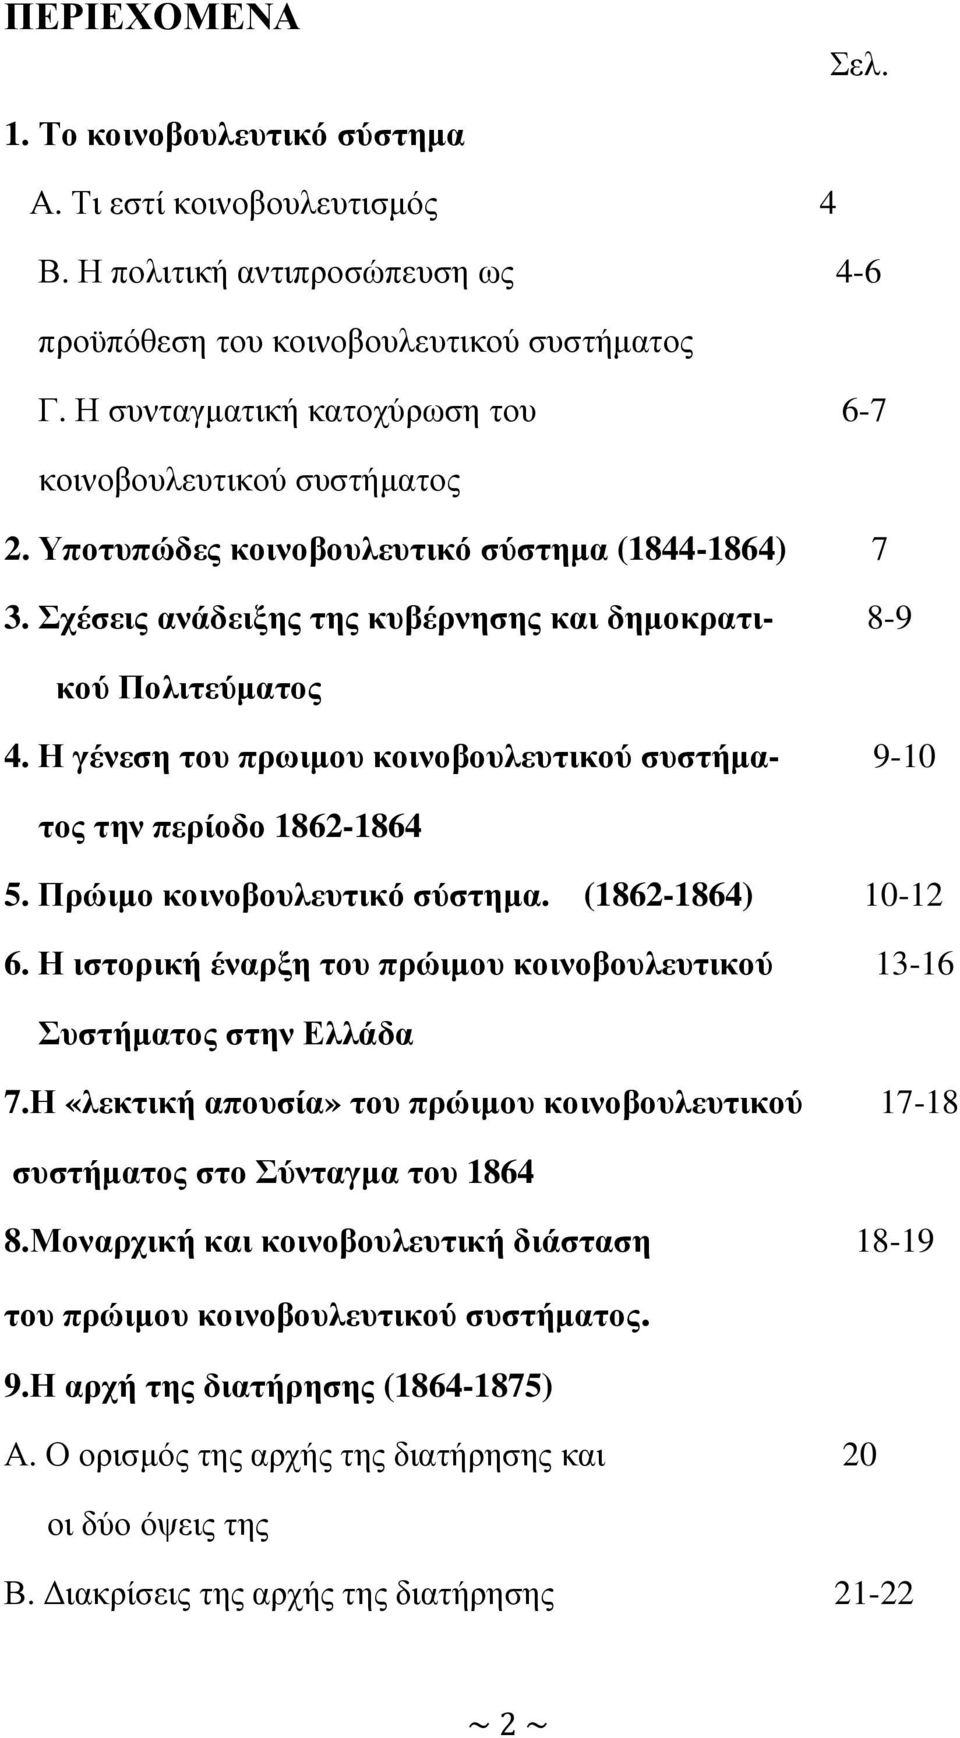 Η γένεση του πρωιµου κοινοβουλευτικού συστήµα- 9-10 τος την περίοδο 1862-1864 5. Πρώιµο κοινοβουλευτικό σύστηµα. (1862-1864) 10-12 6.